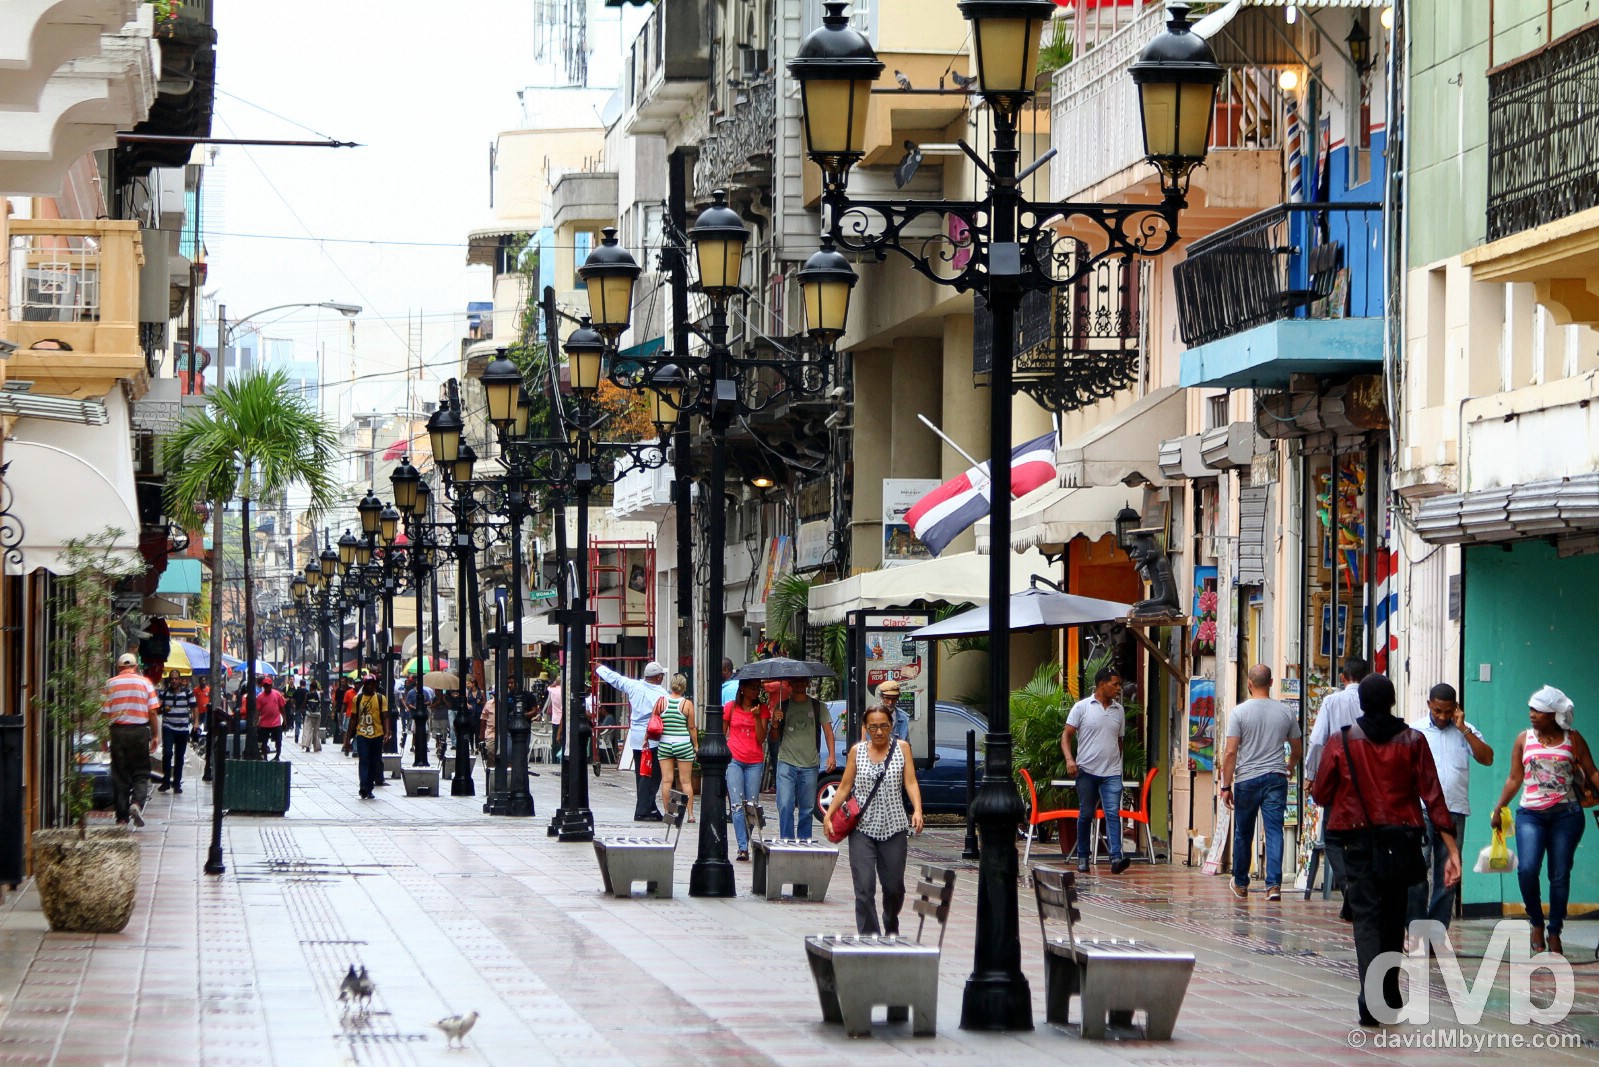 Pedestrianised El Conde in Santo Domingo, Dominican Republic. May 25, 2015.